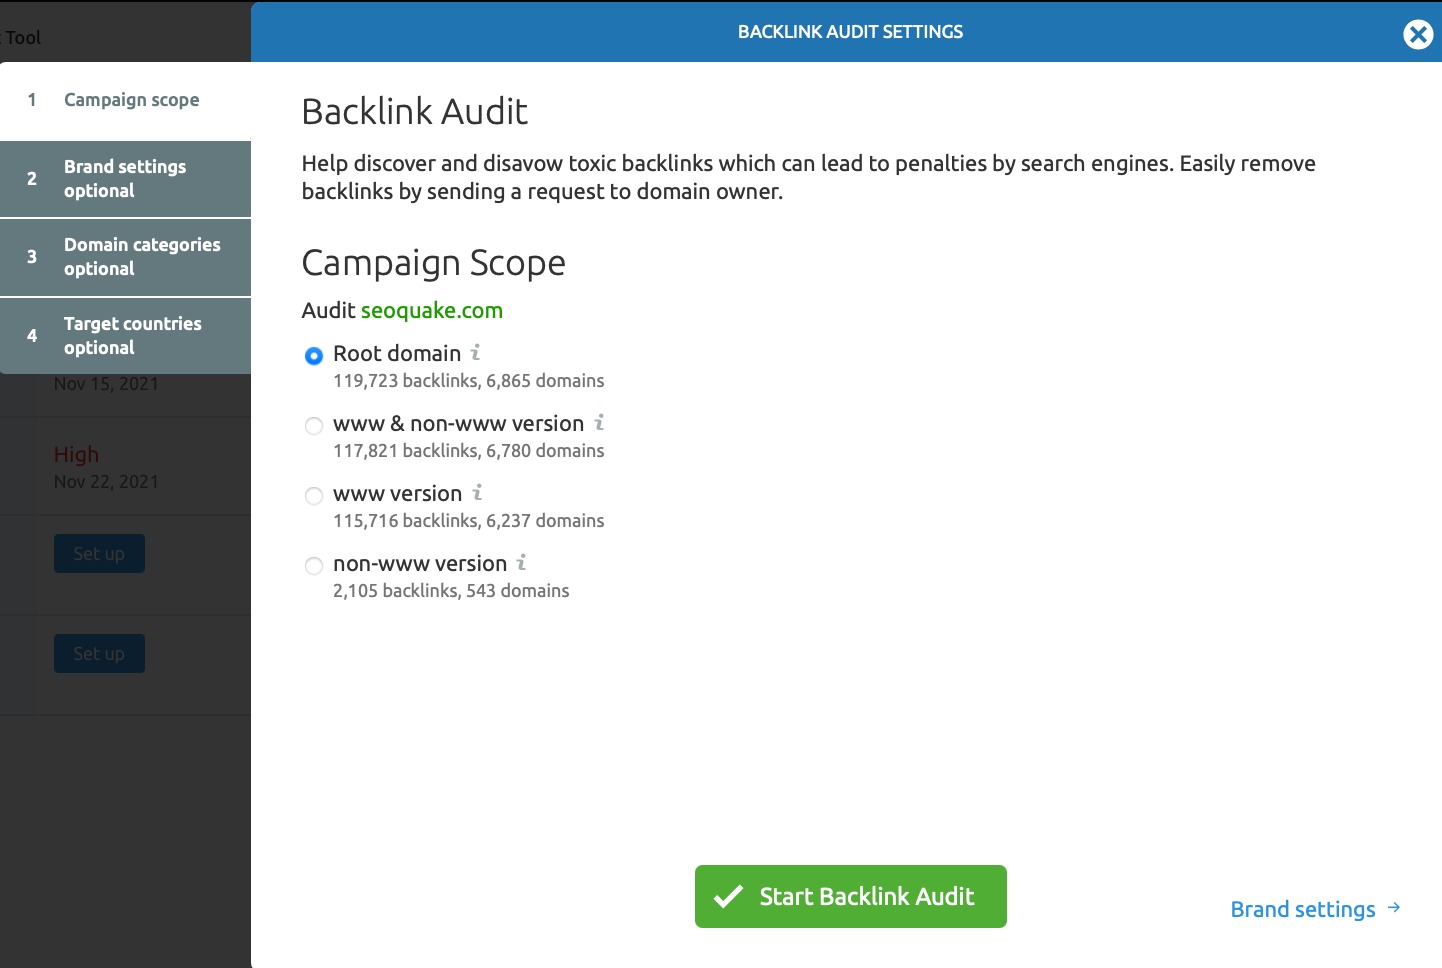 Backlink Audit configuration